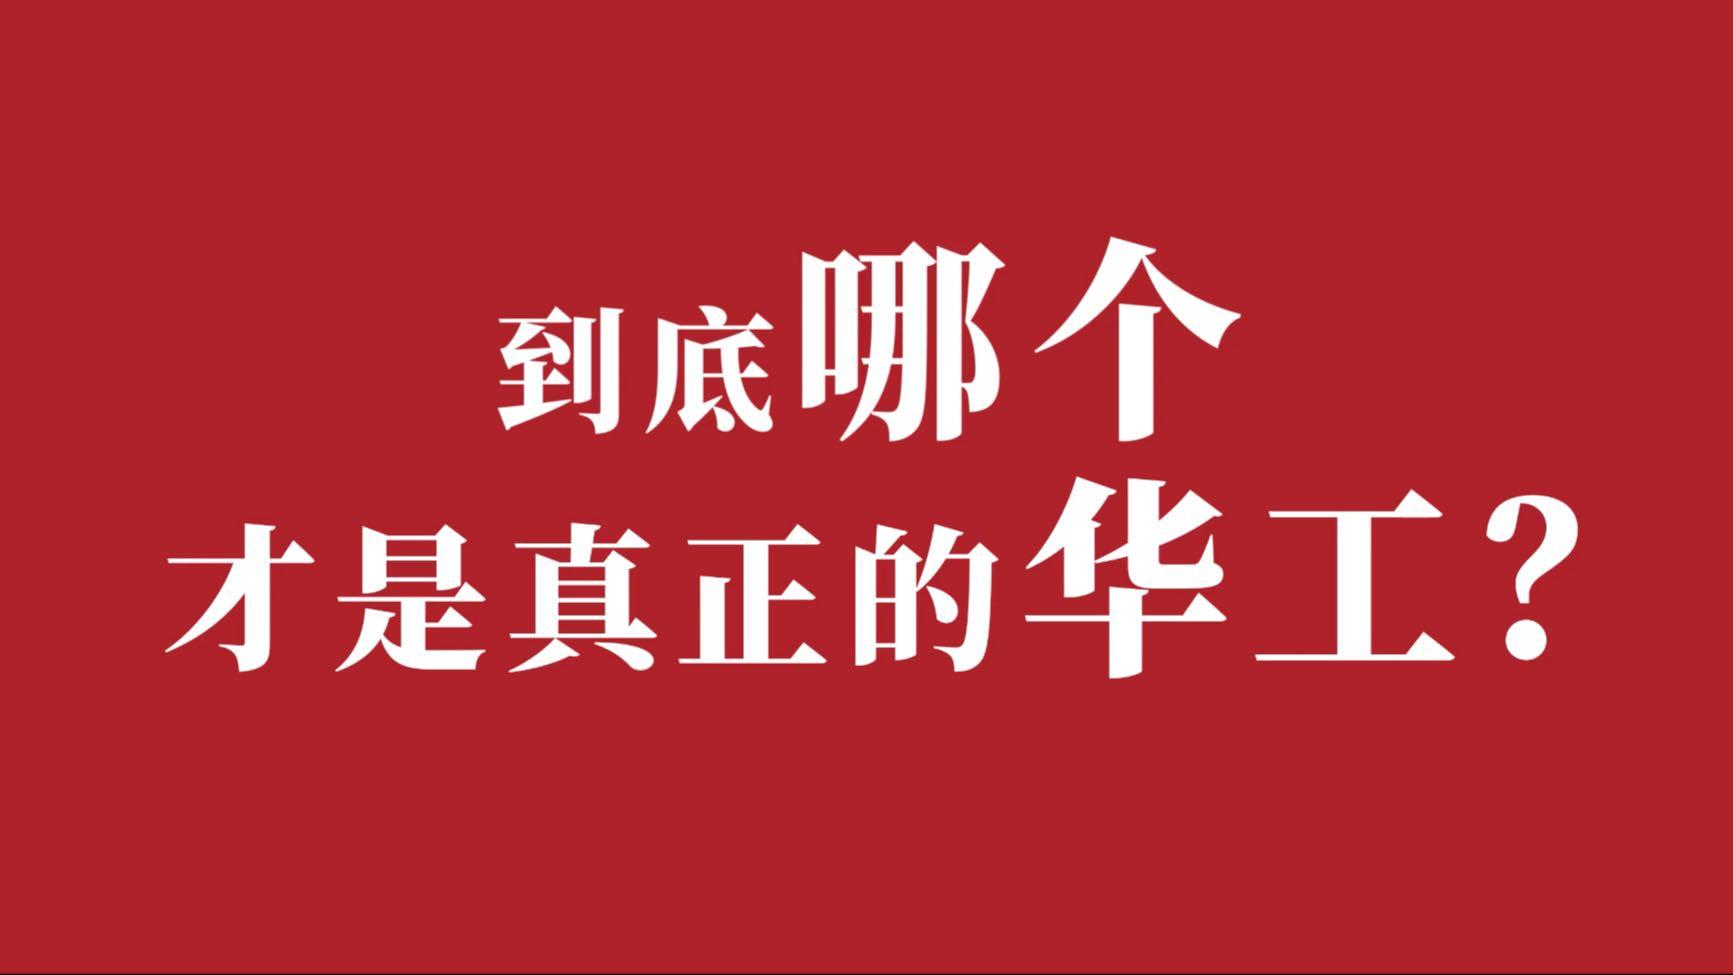 华南理工大学2022年校庆宣传片《名片》